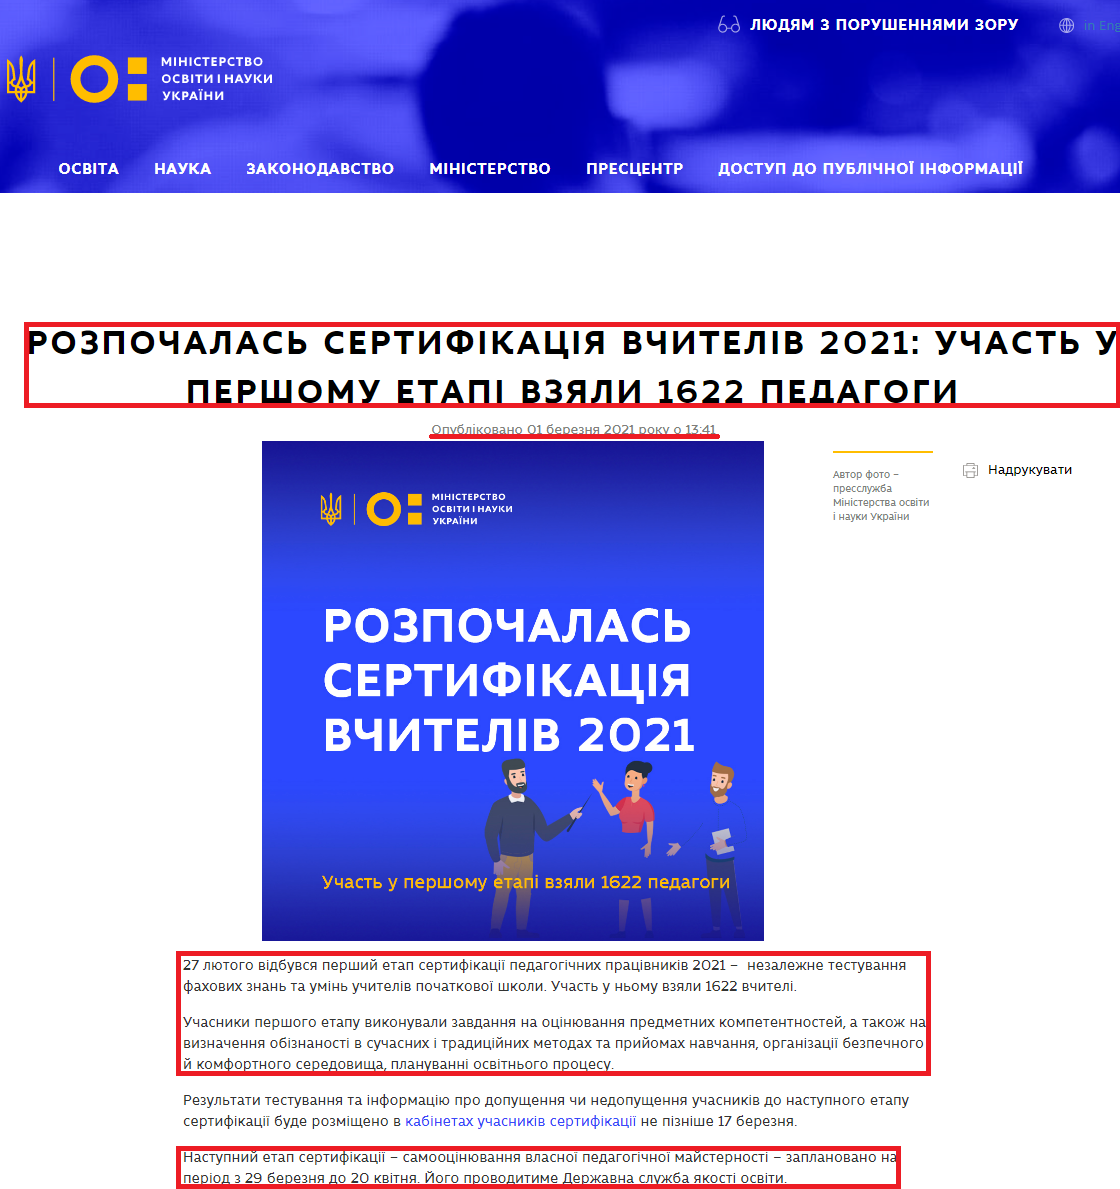 https://mon.gov.ua/ua/news/rozpochalas-sertifikaciya-vchiteliv-2021-uchast-u-pershomu-etapi-vzyali-1622-pedagogi